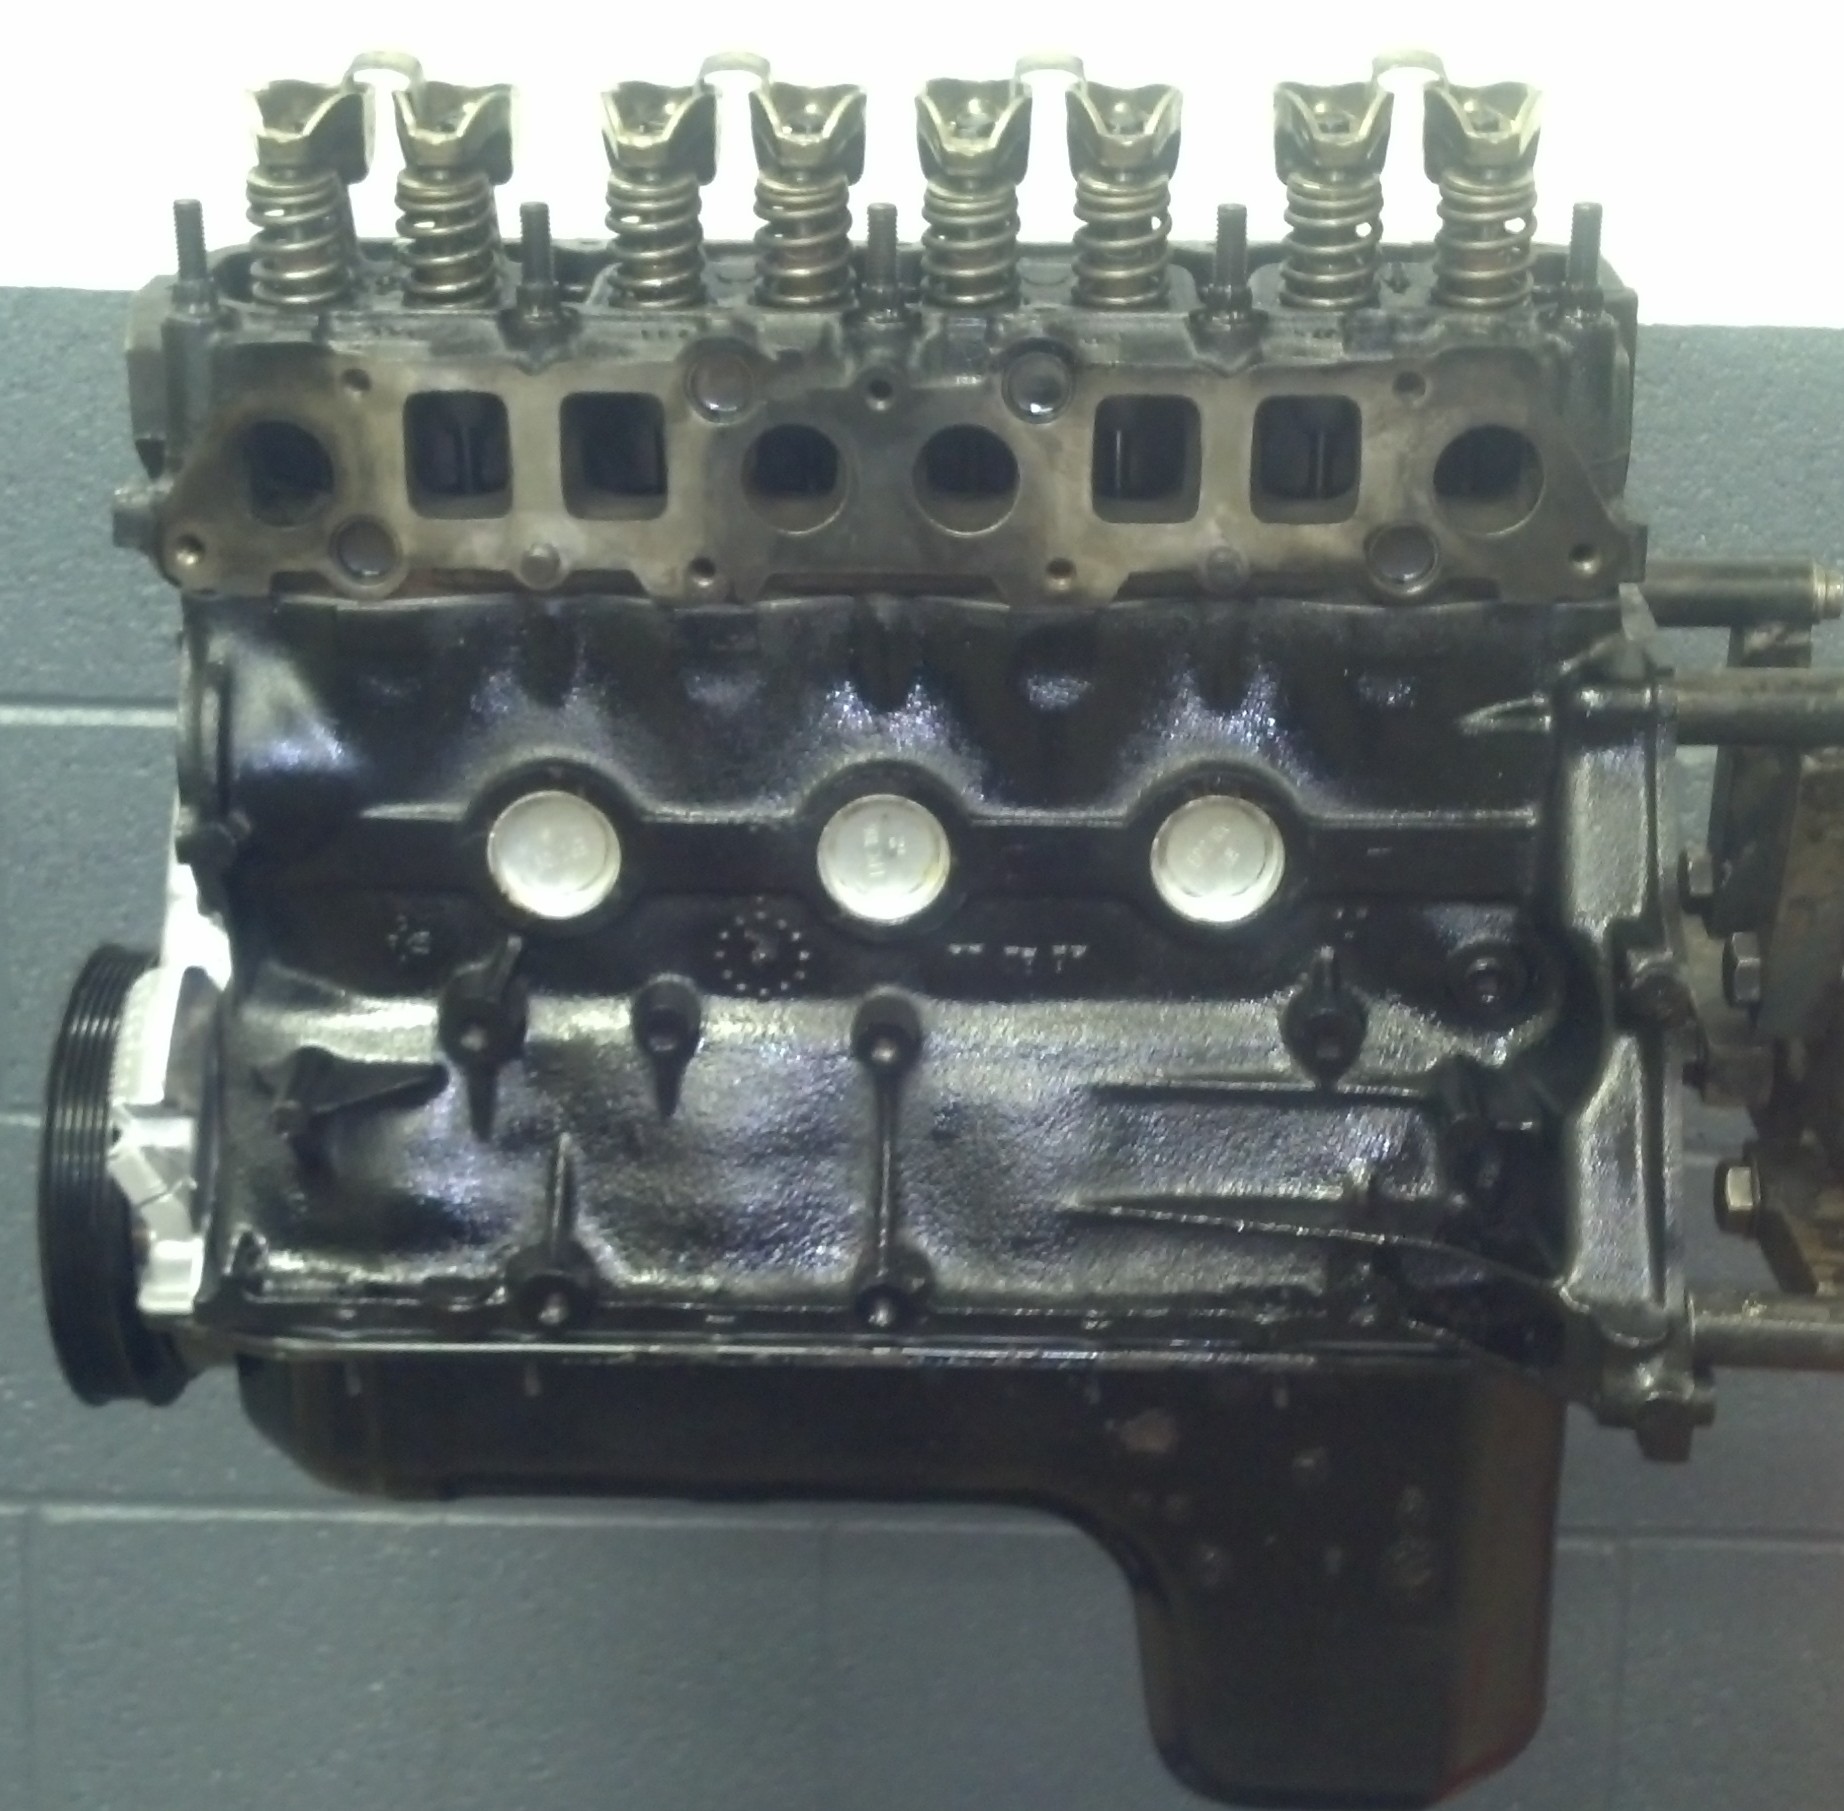 How to rebuild a jeep wrangler engine #3